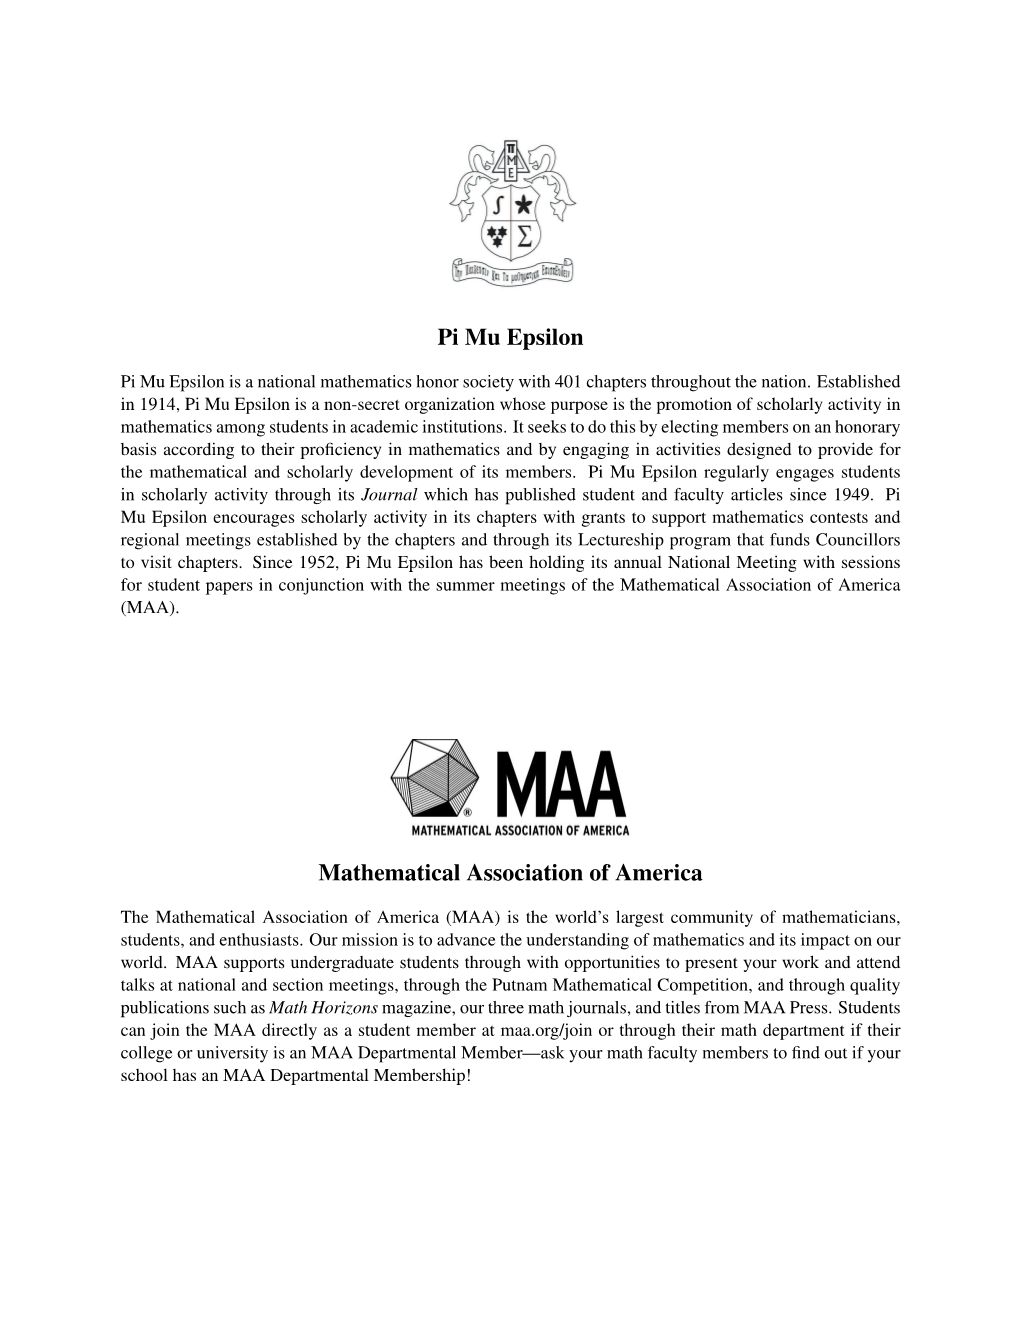 Pi Mu Epsilon Mathematical Association of America